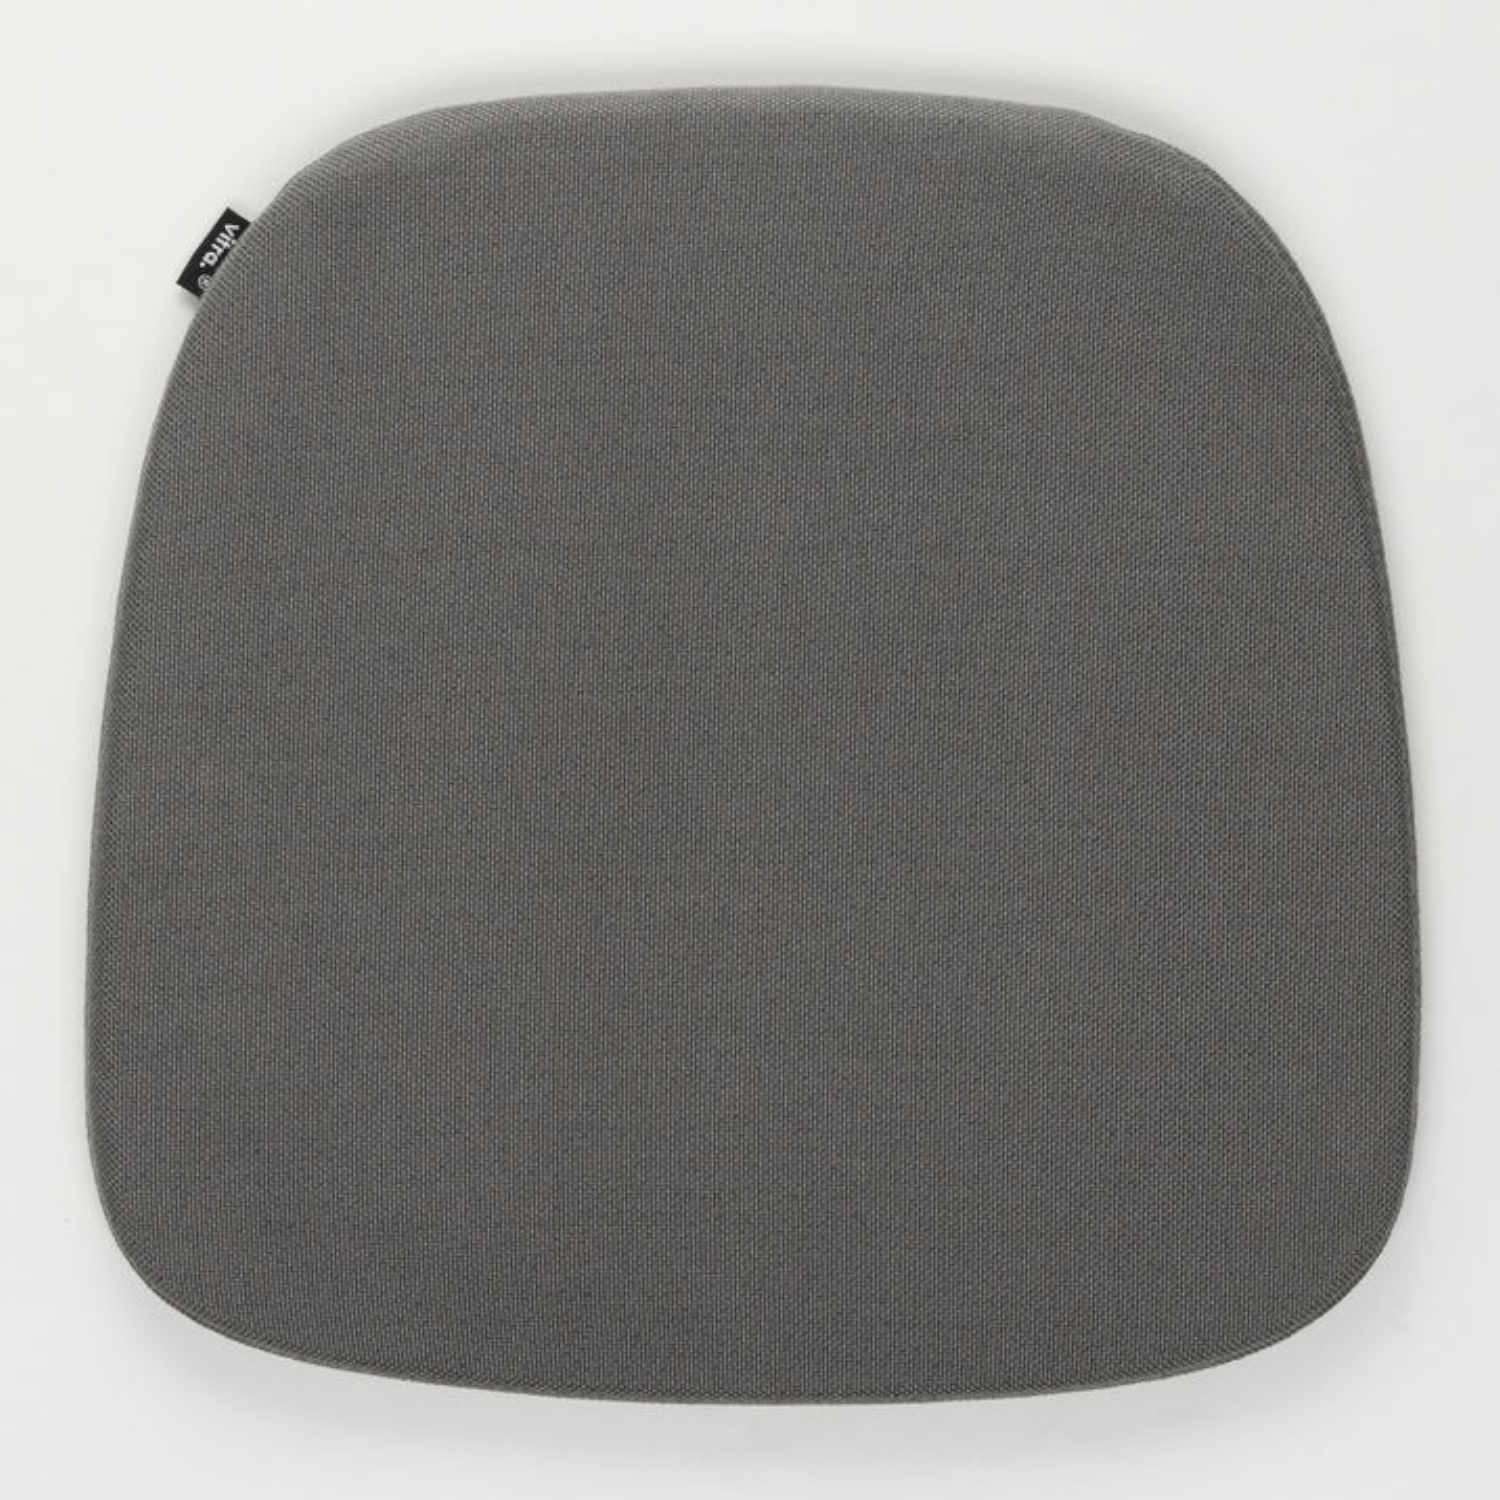 Soft Seats Type A Outdoor Sitzkissen, Bezug simmons 61 / grey von Vitra